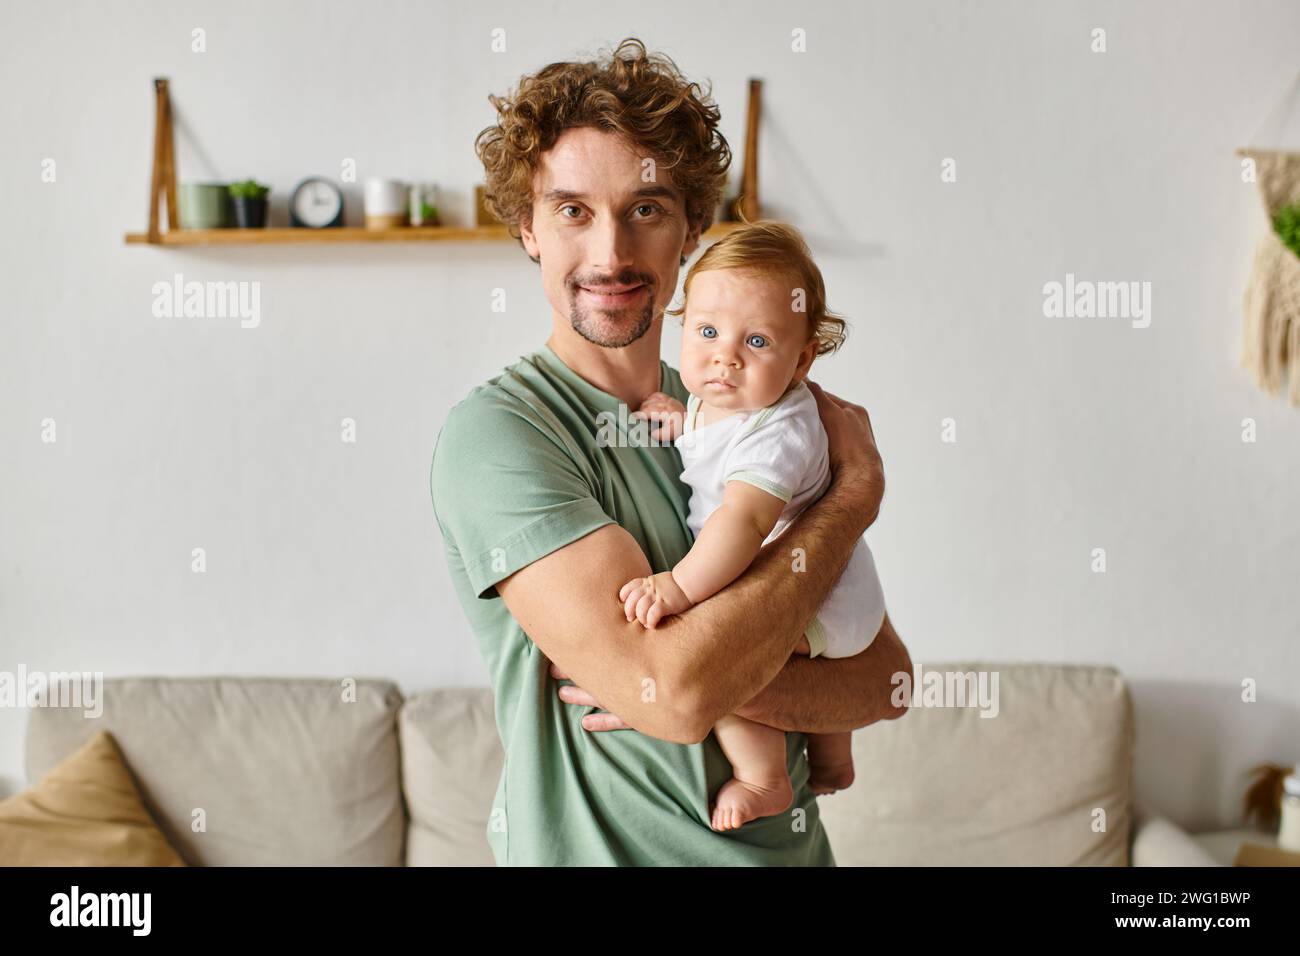 Vater mit lockigen Haaren und Bart, der seinen kleinen Sohn mit blauen Augen in einem gemütlichen Wohnzimmer hält, Porträt Stockfoto